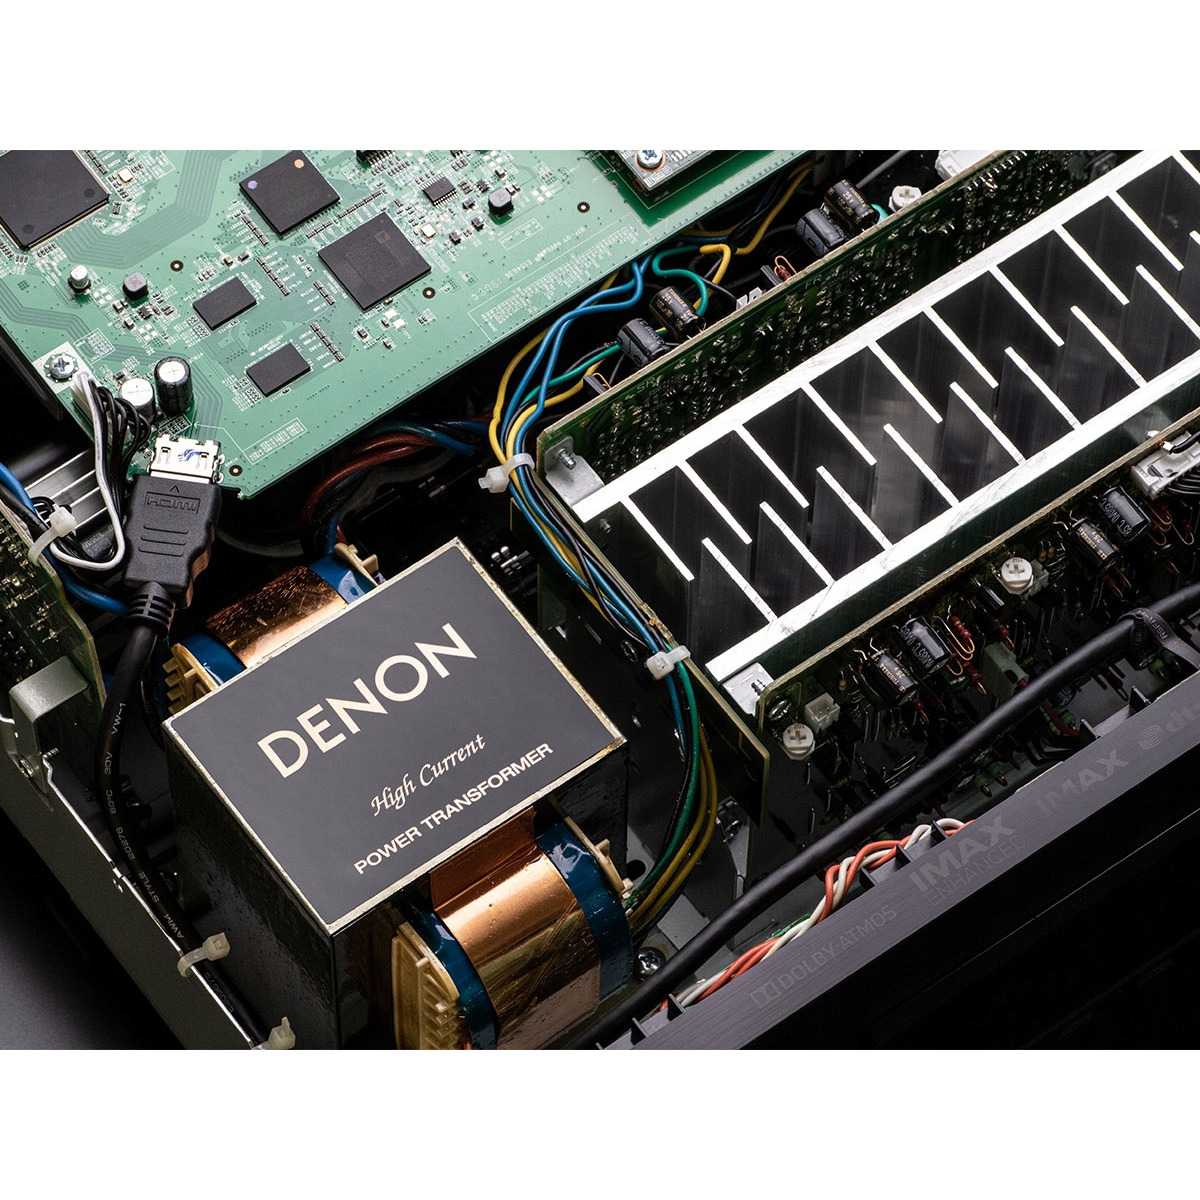 Корпорация Sound United, куда входит бренд Denon, провела презентацию на которой представила X-серию AV-ресиверов Denon, начинающуюся с модели AVR-X2700H Согласно пресс-релизу, новинка получила дискретный 7-канальный усилитель с максимальной мощностью 150